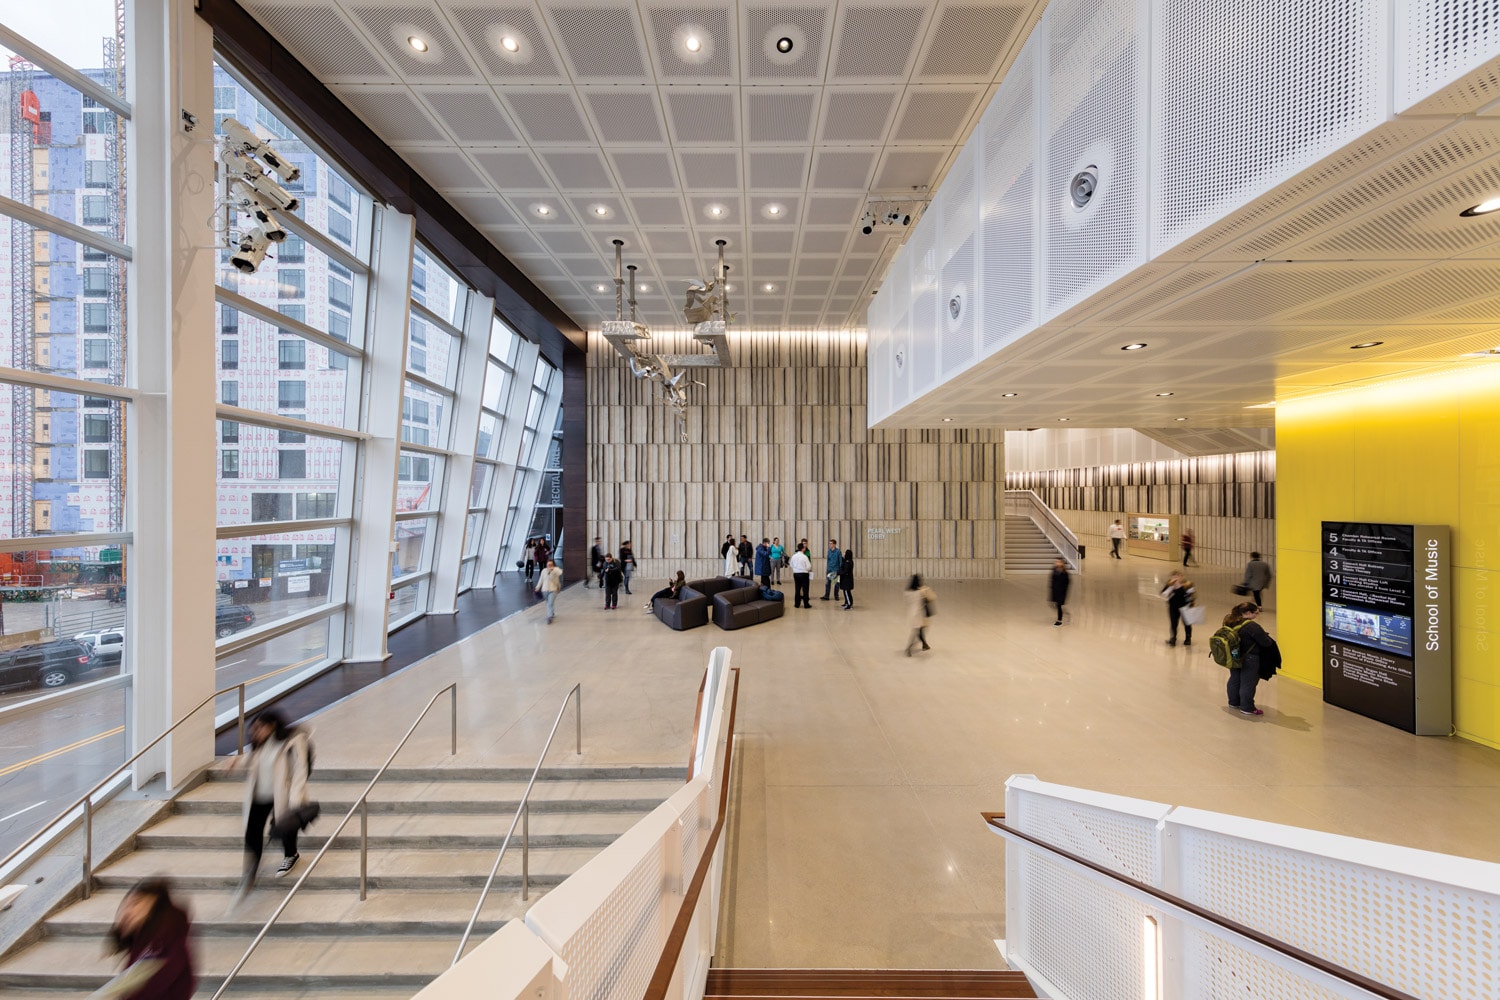 Voxman Hallway Smart Buildings